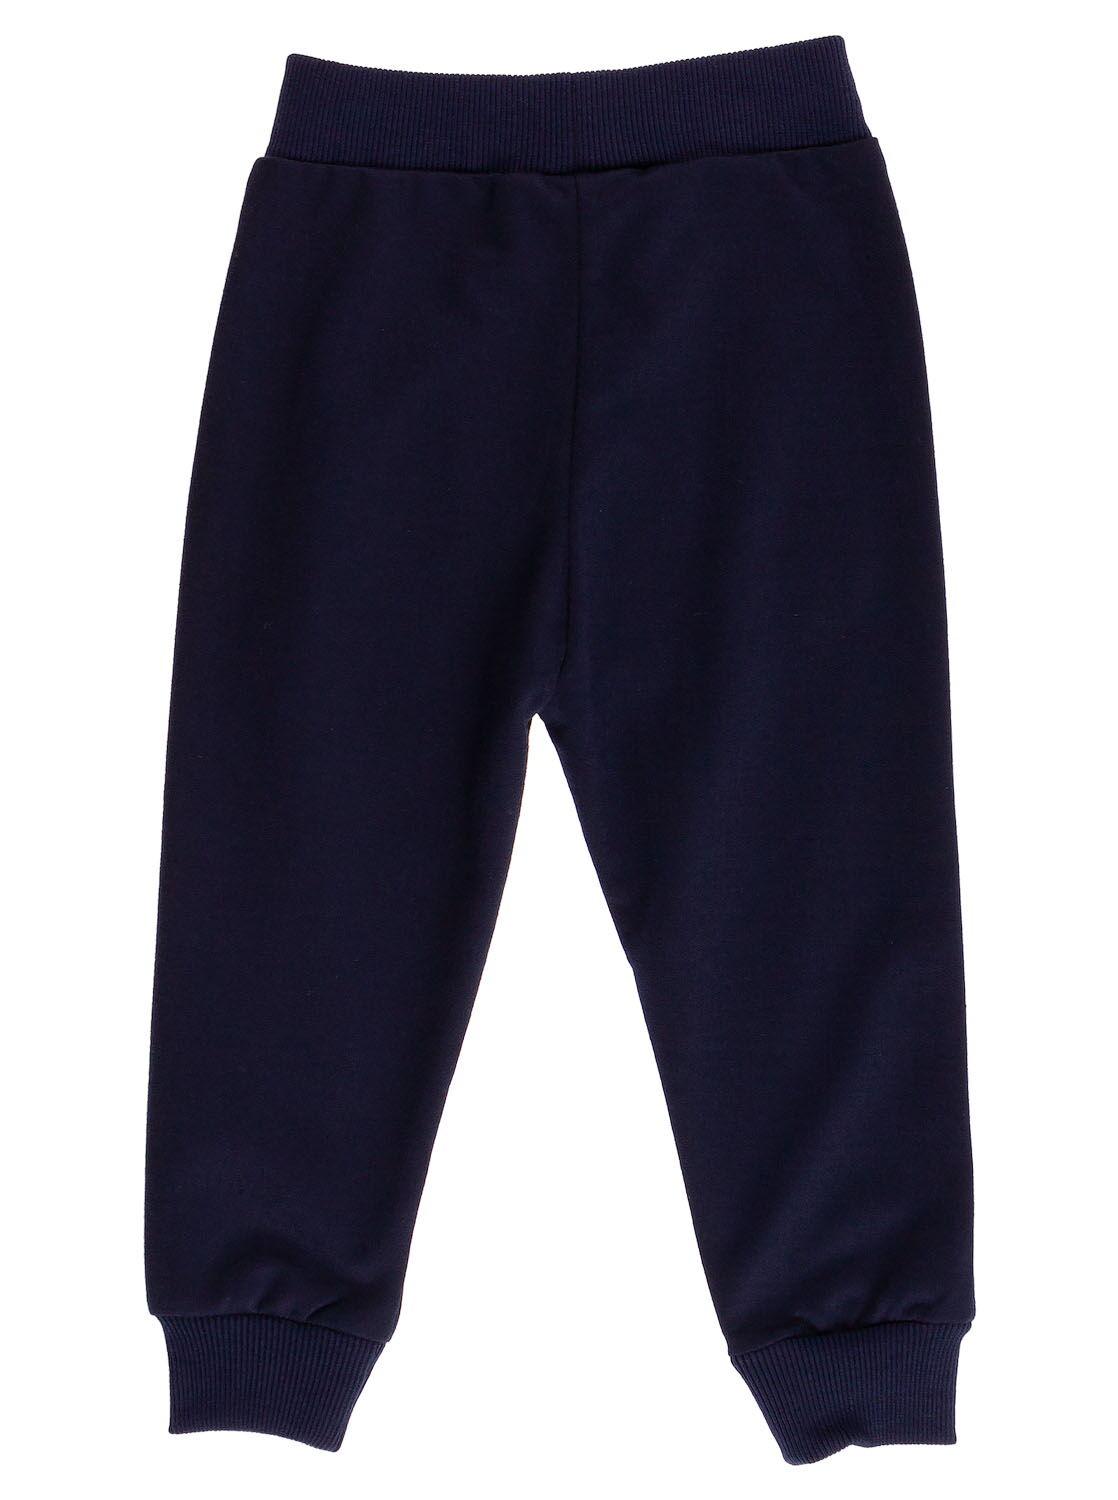 Спортивные штаны для мальчика Sincere темно-синие 2309 - фото